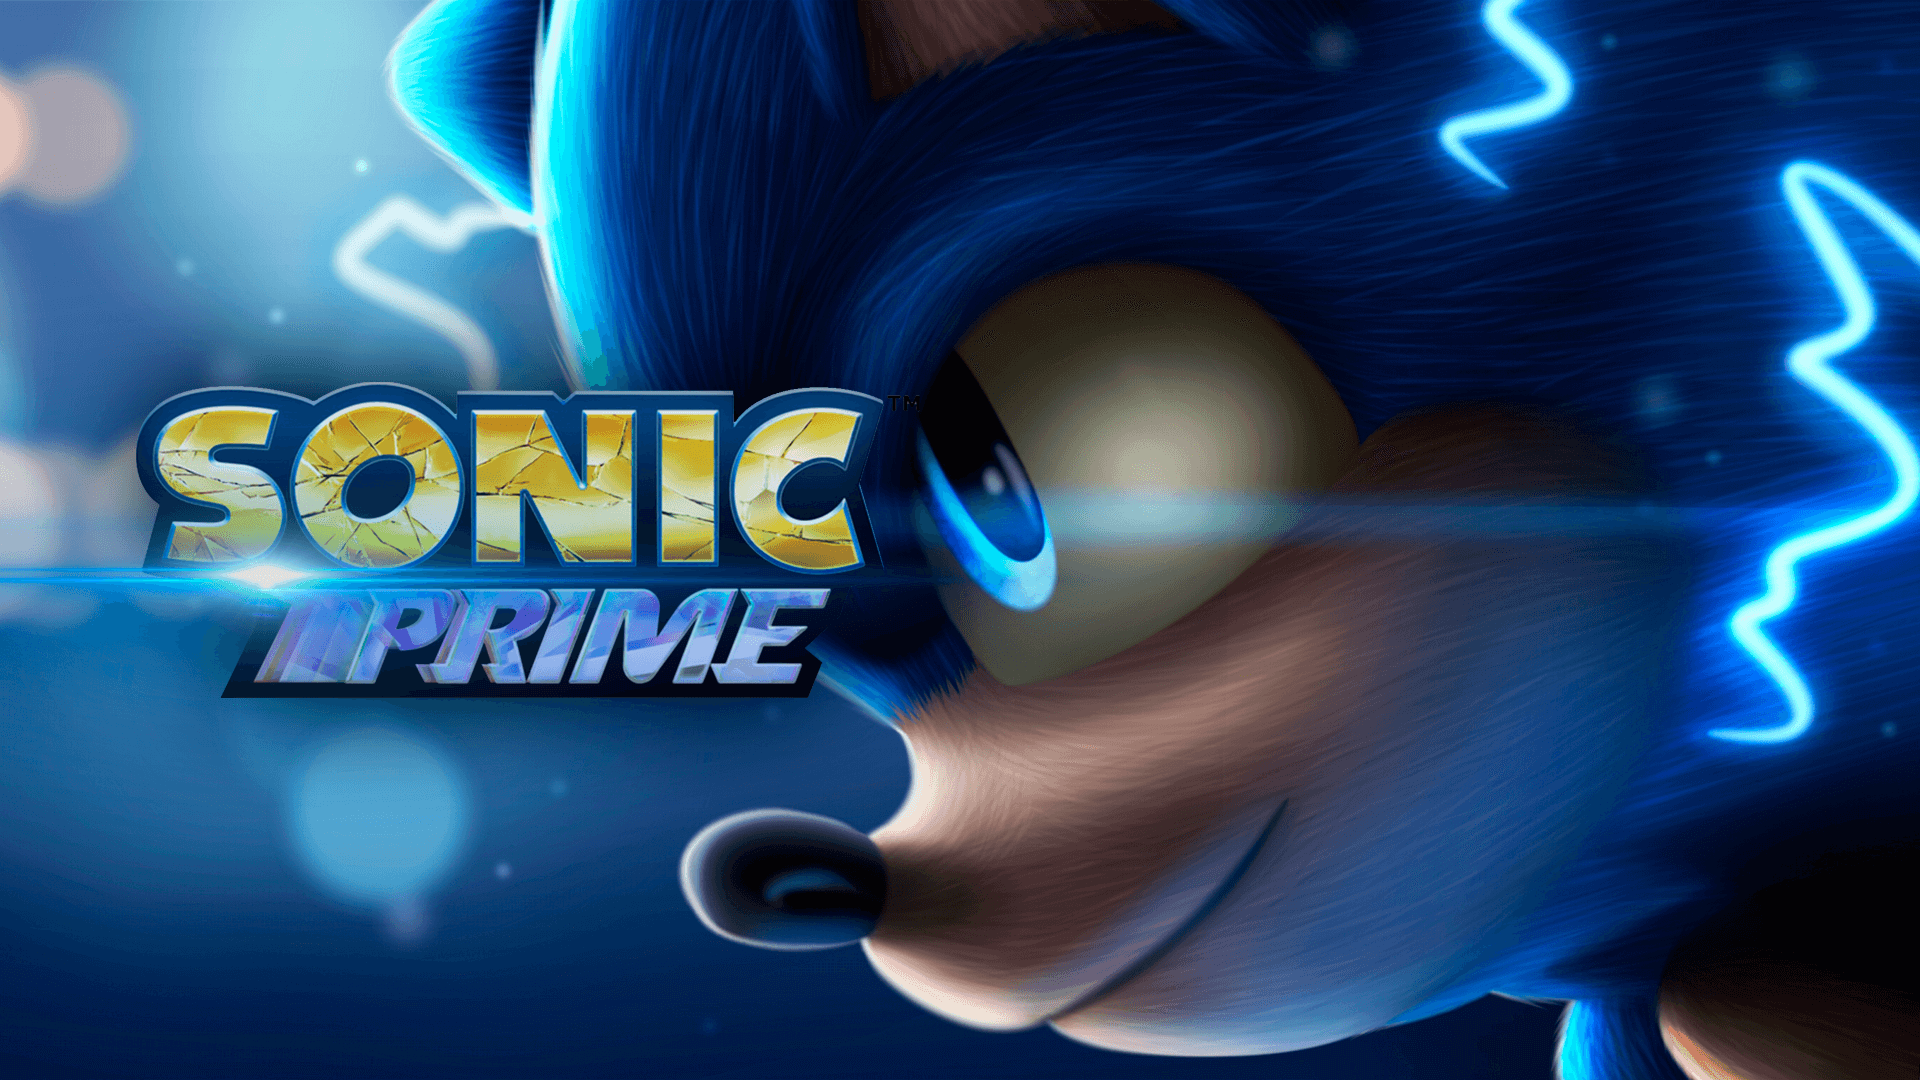 A Netflix anunciou oficialmente a produção de uma nova série de animação inspirada no ouriço azul, que vai ficar conhecida como Sonic Prime.